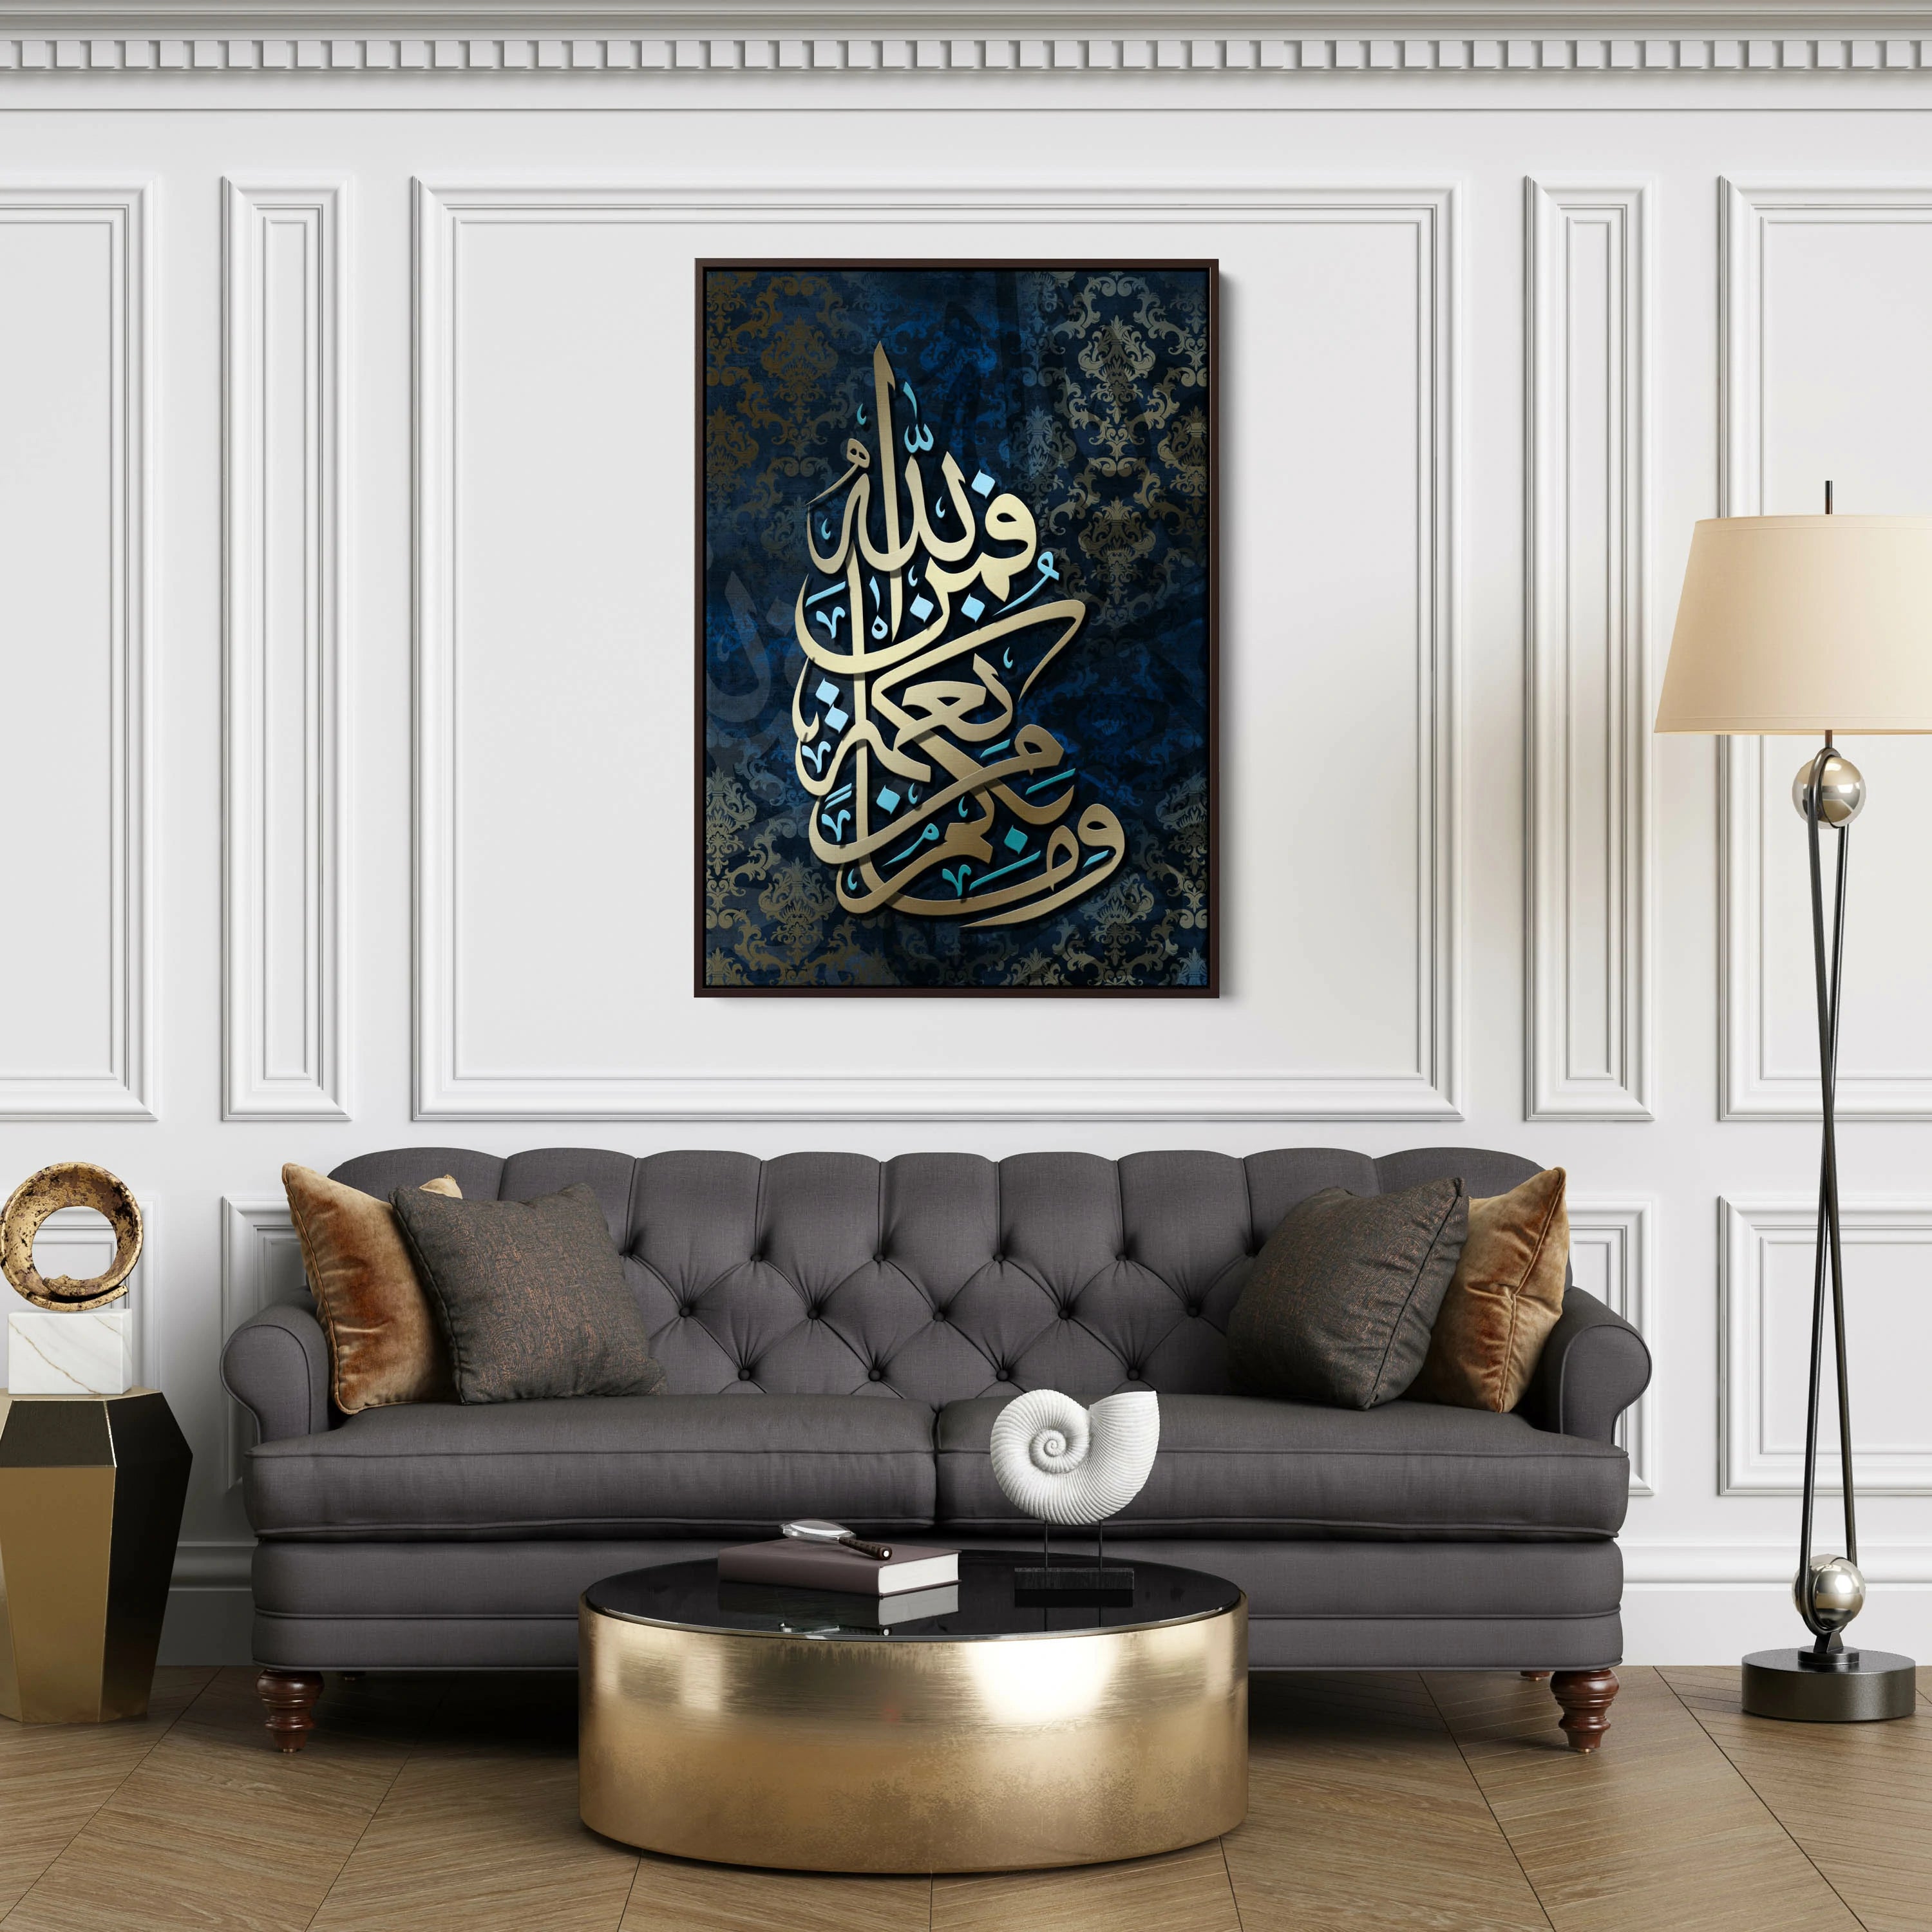 Surah An-Nahl Ayat 53 Islamic Canvas Wall Art